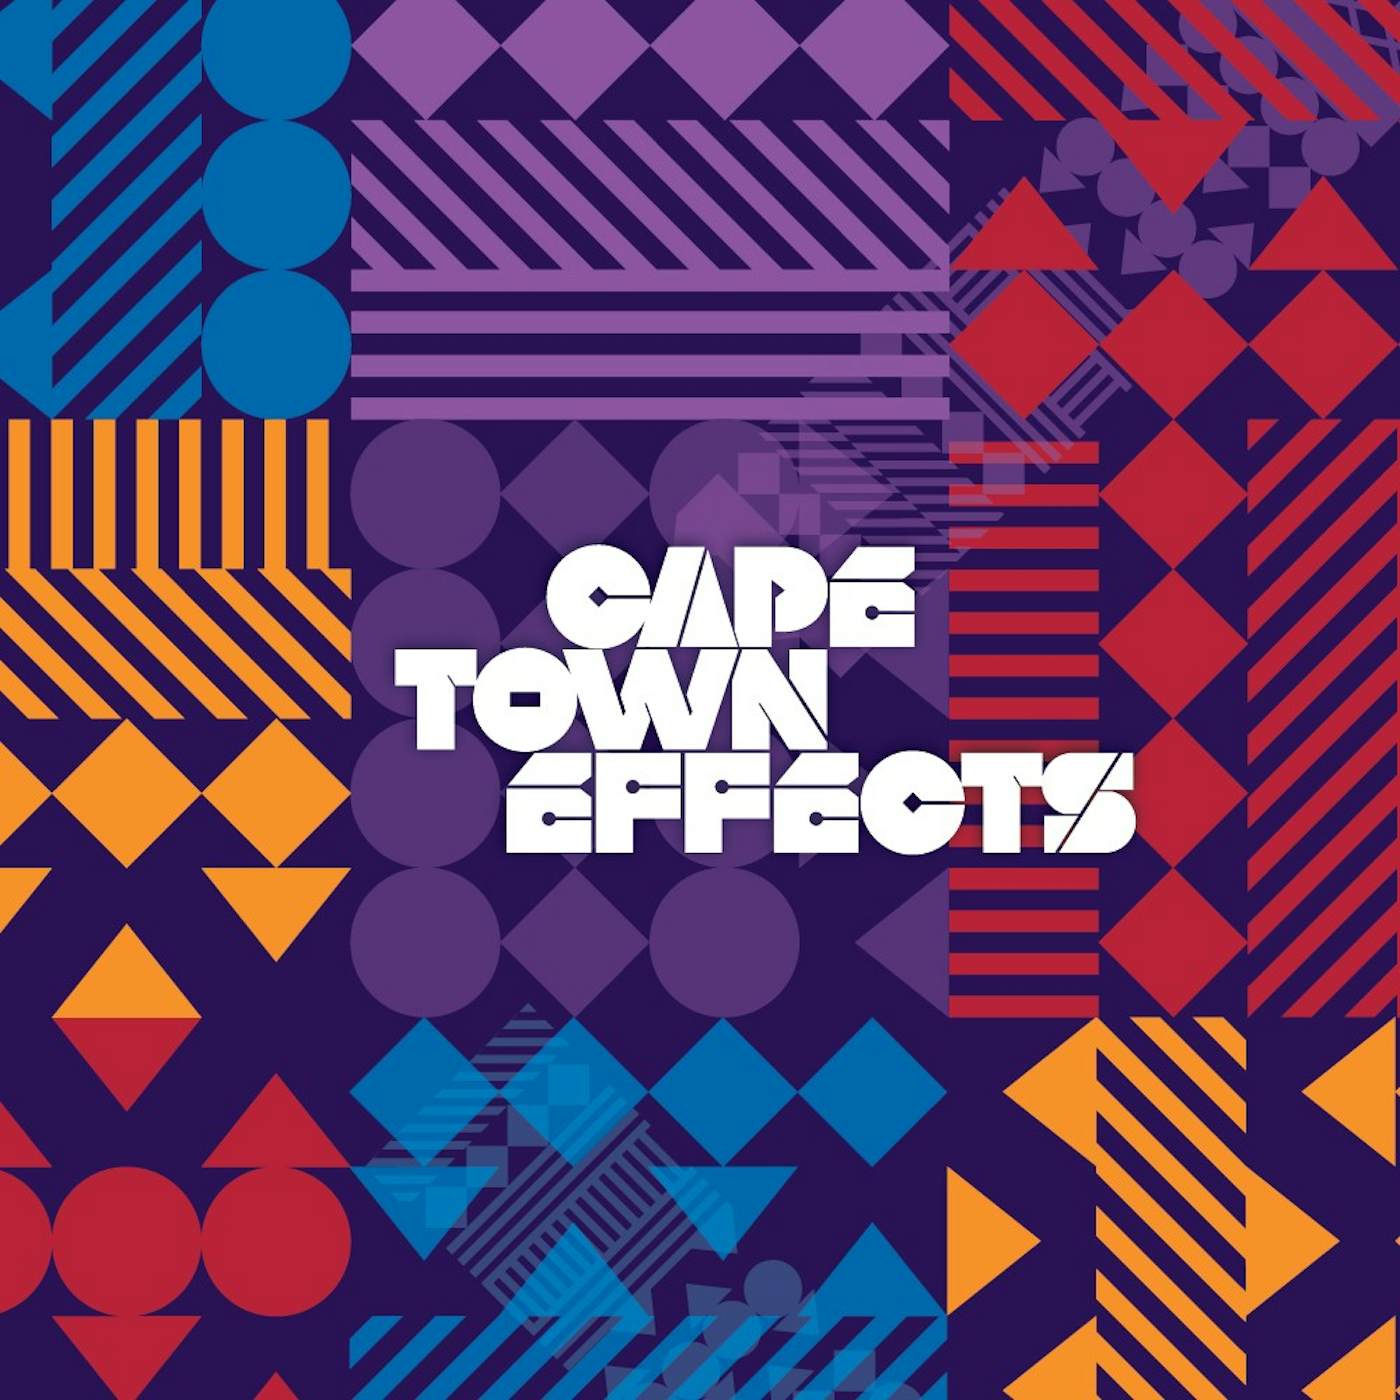  Cape Town Effects (Vinyl)